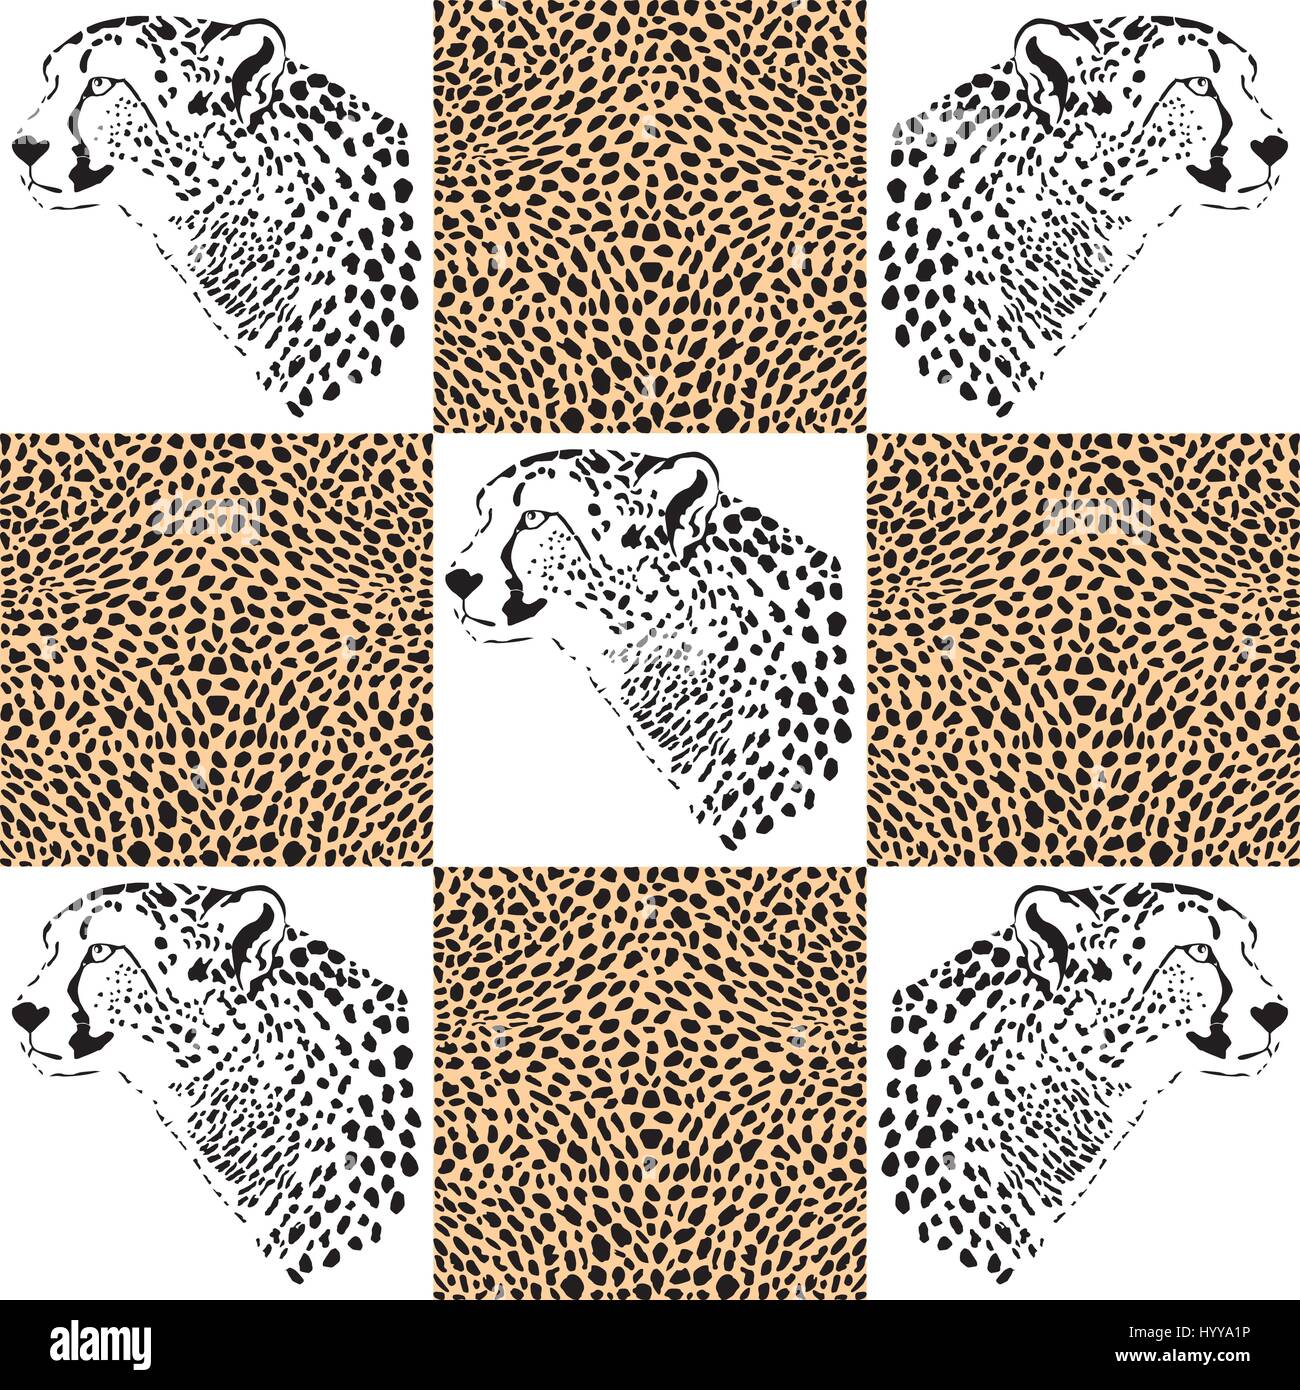 Geparden-Muster für Textilien Stock Vektor